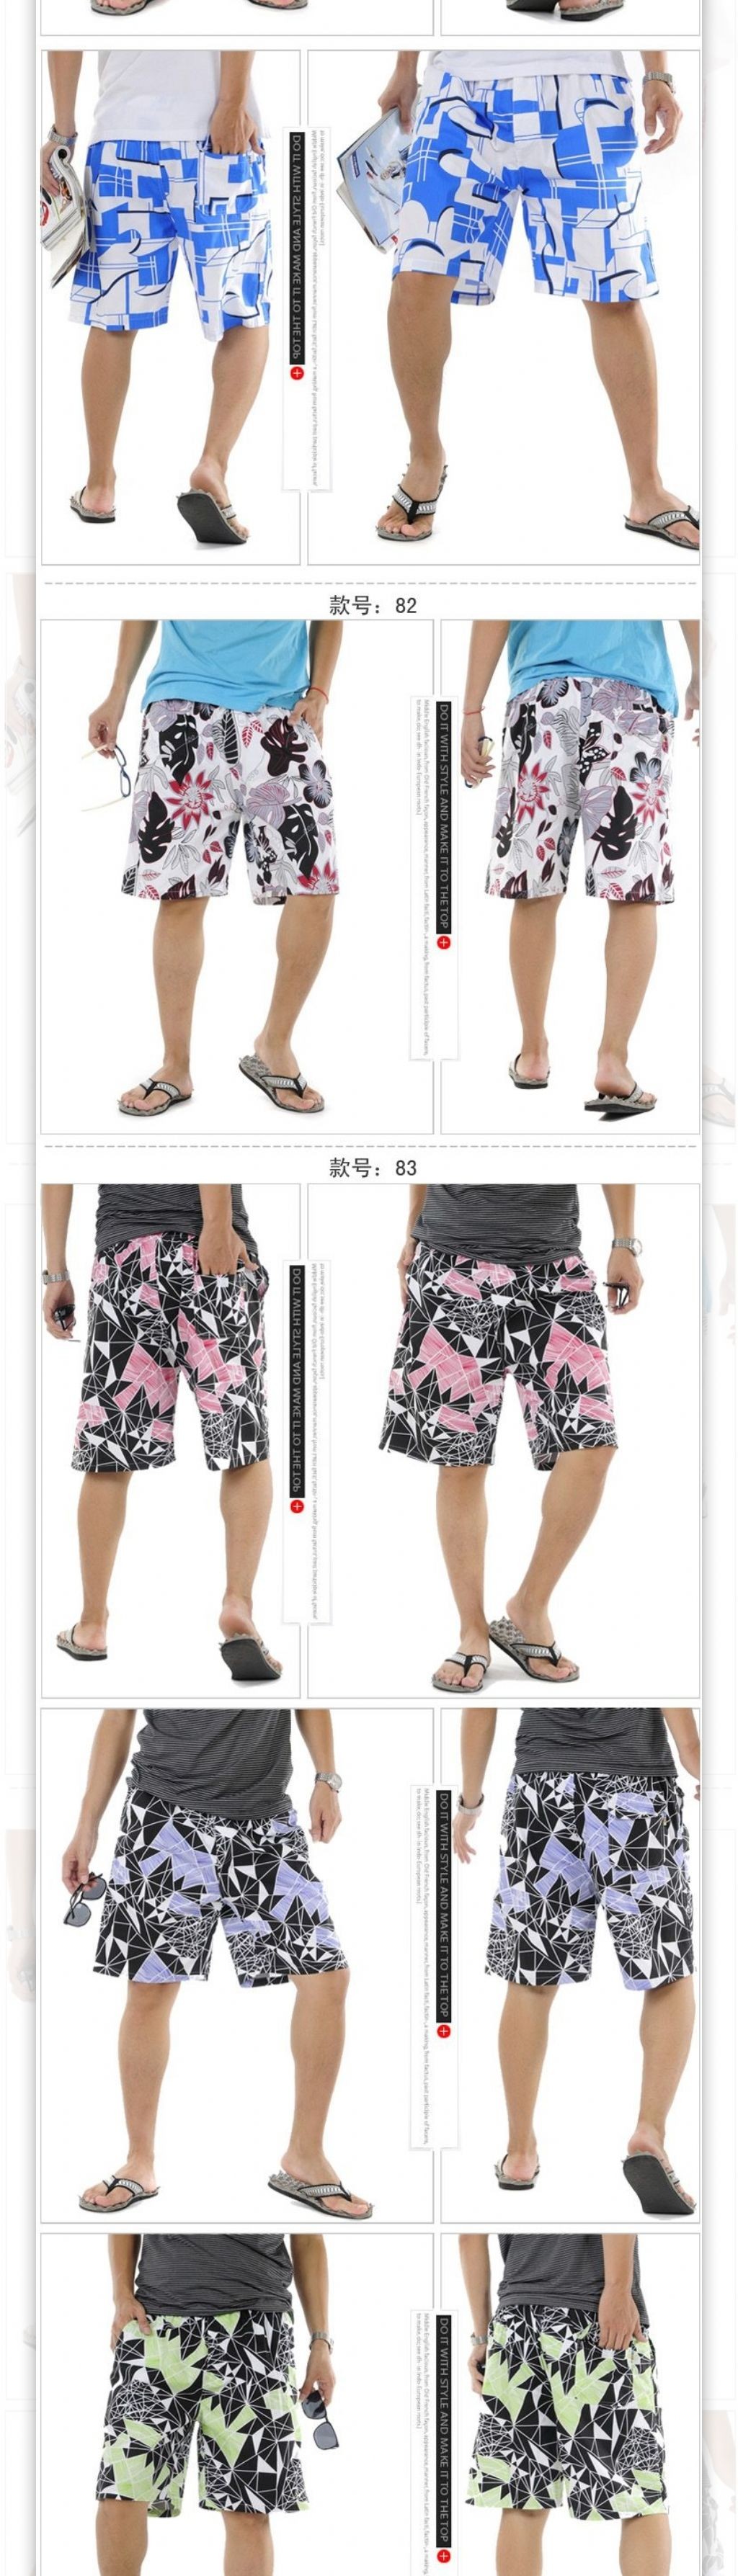 清凉夏季沙滩裤描述页面海报